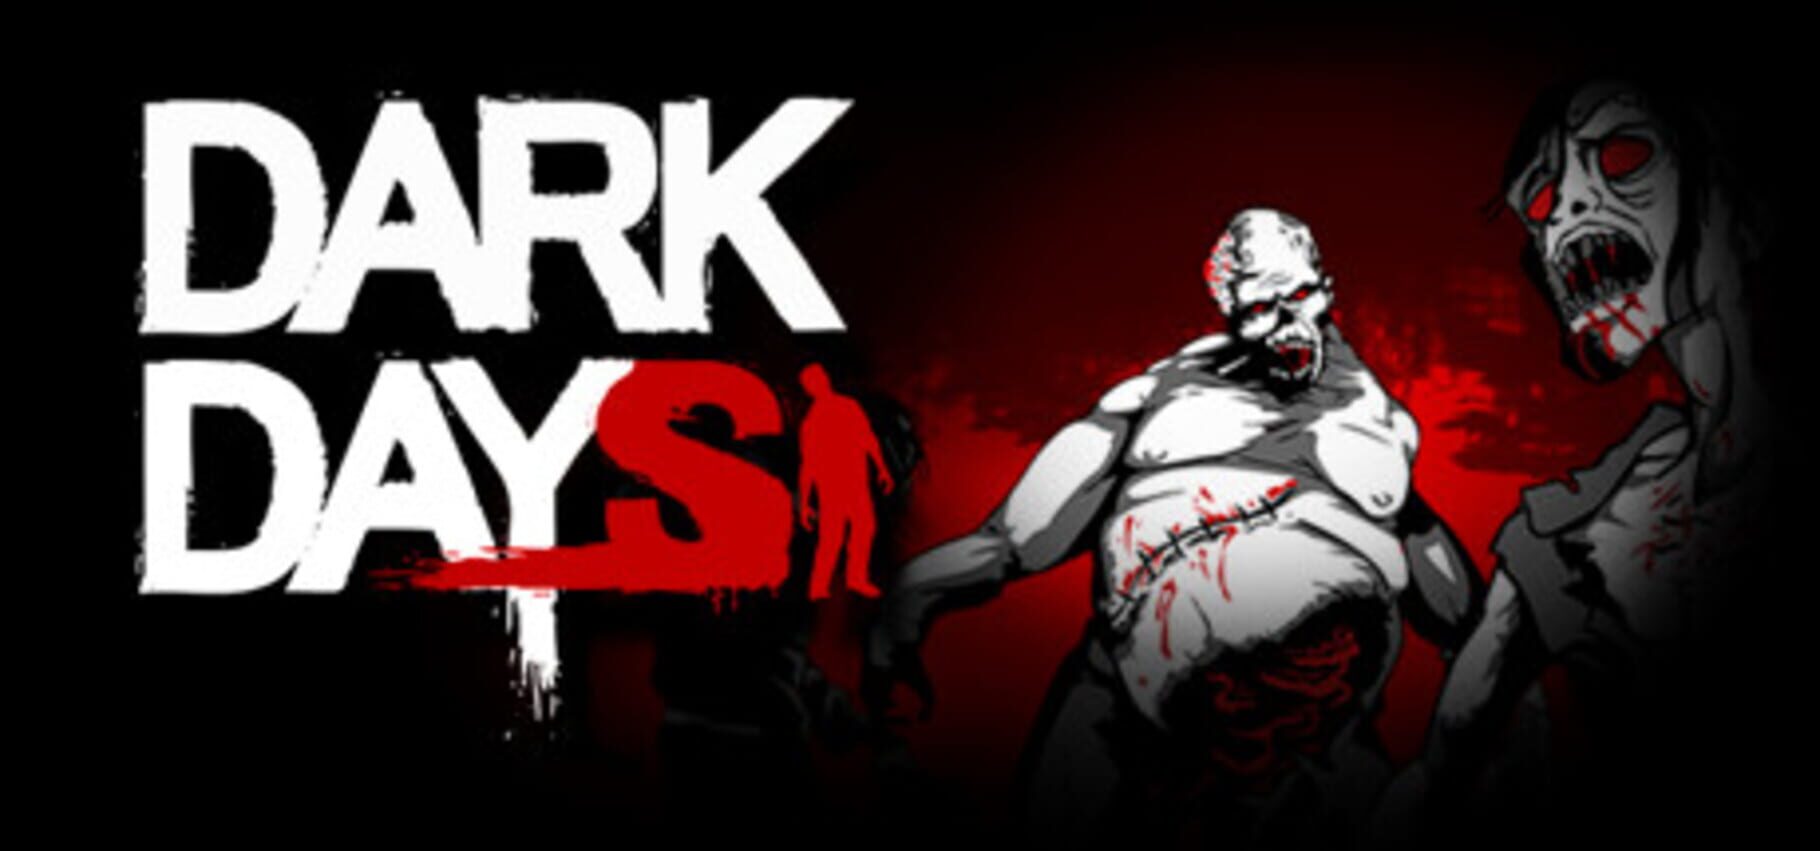 Dark Days. Dark Days (PC game on Steam). Дарк заказы. Dark Days logo. Дарк дейс